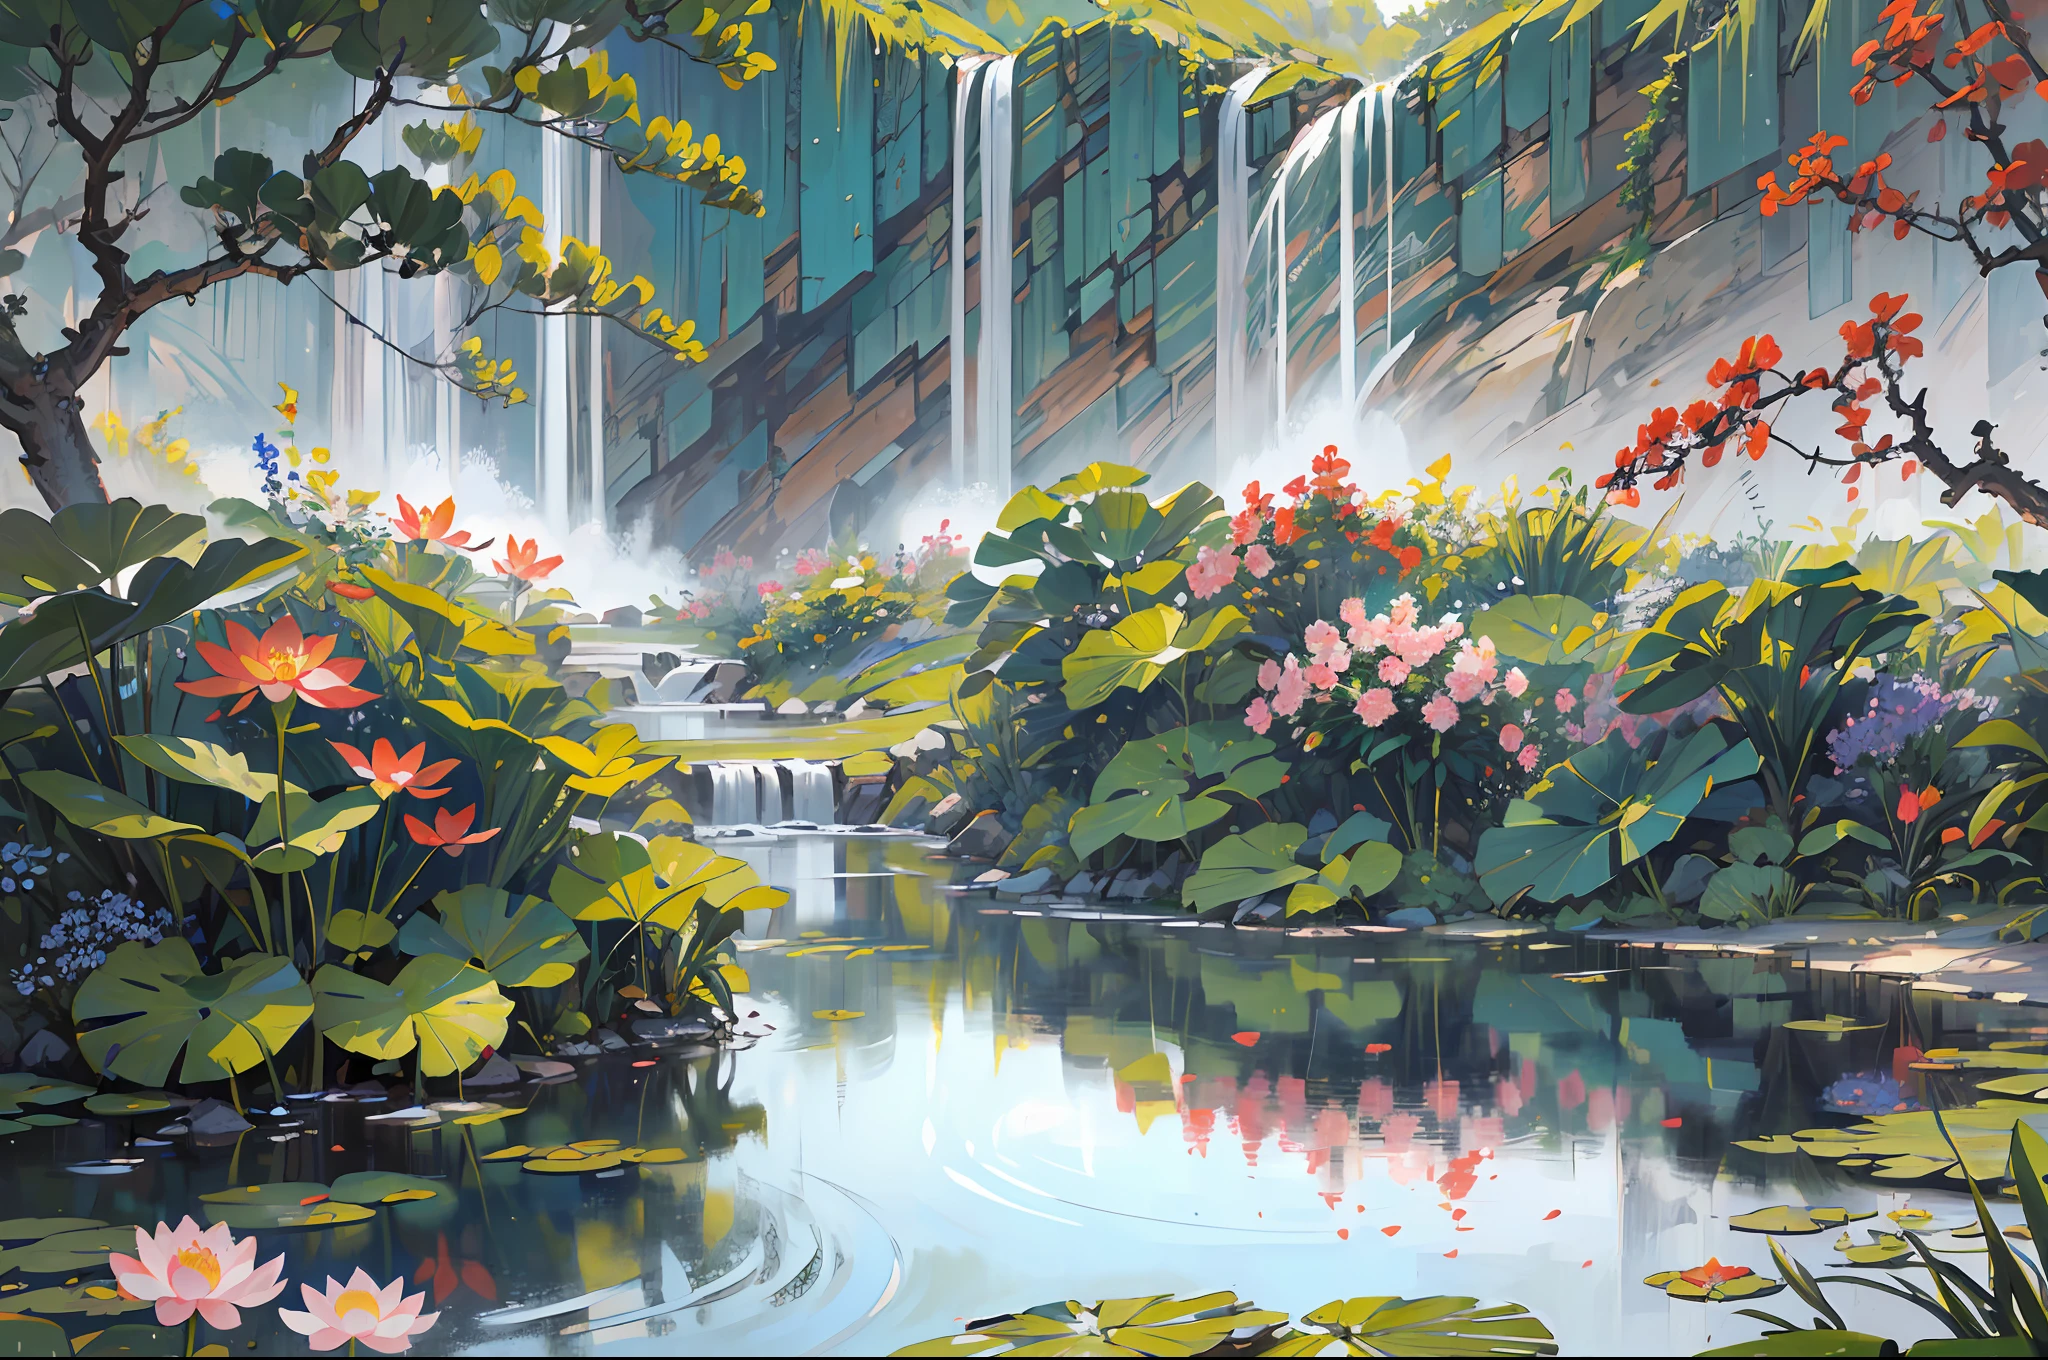 ((最好的品質, 傑作: 1.2)), CG, 8K, 錯綜複雜的細節, 電影視角, (周圍沒有人), (中國古代園林), pond filled with lotus 花朵, 岩石, 花朵, 竹林, 瀑布, 樹木繁茂的地區, 小橋橫跨潺潺溪流, detailed foliage and 花朵, (陽光照耀, 波光粼粼的波浪), 宁静祥和的气氛, ((色彩柔和優雅)), ((精雕細琢的構圖))